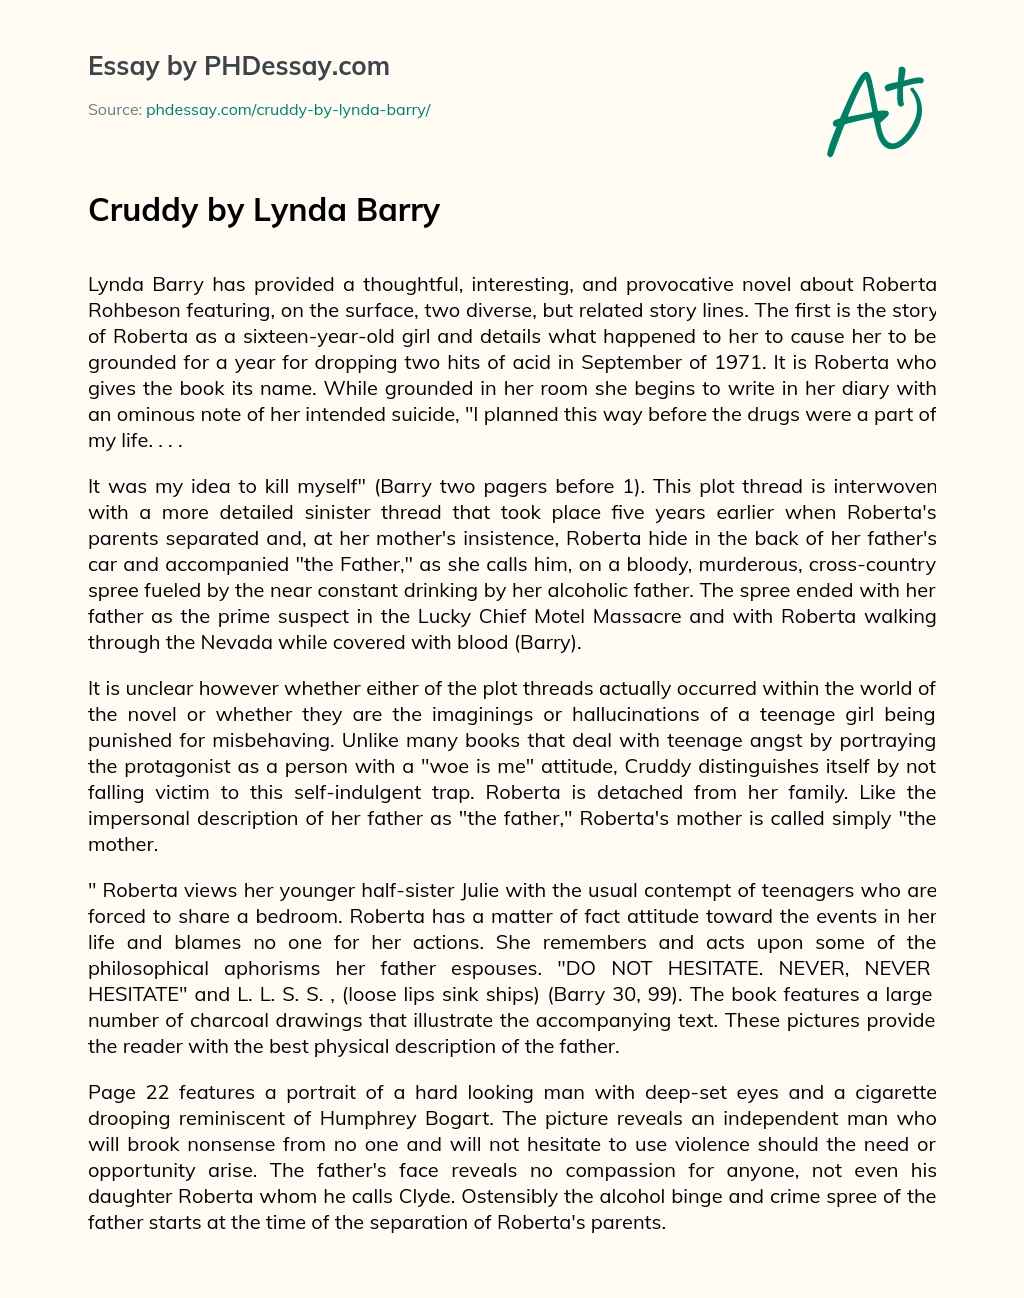 Cruddy by Lynda Barry essay